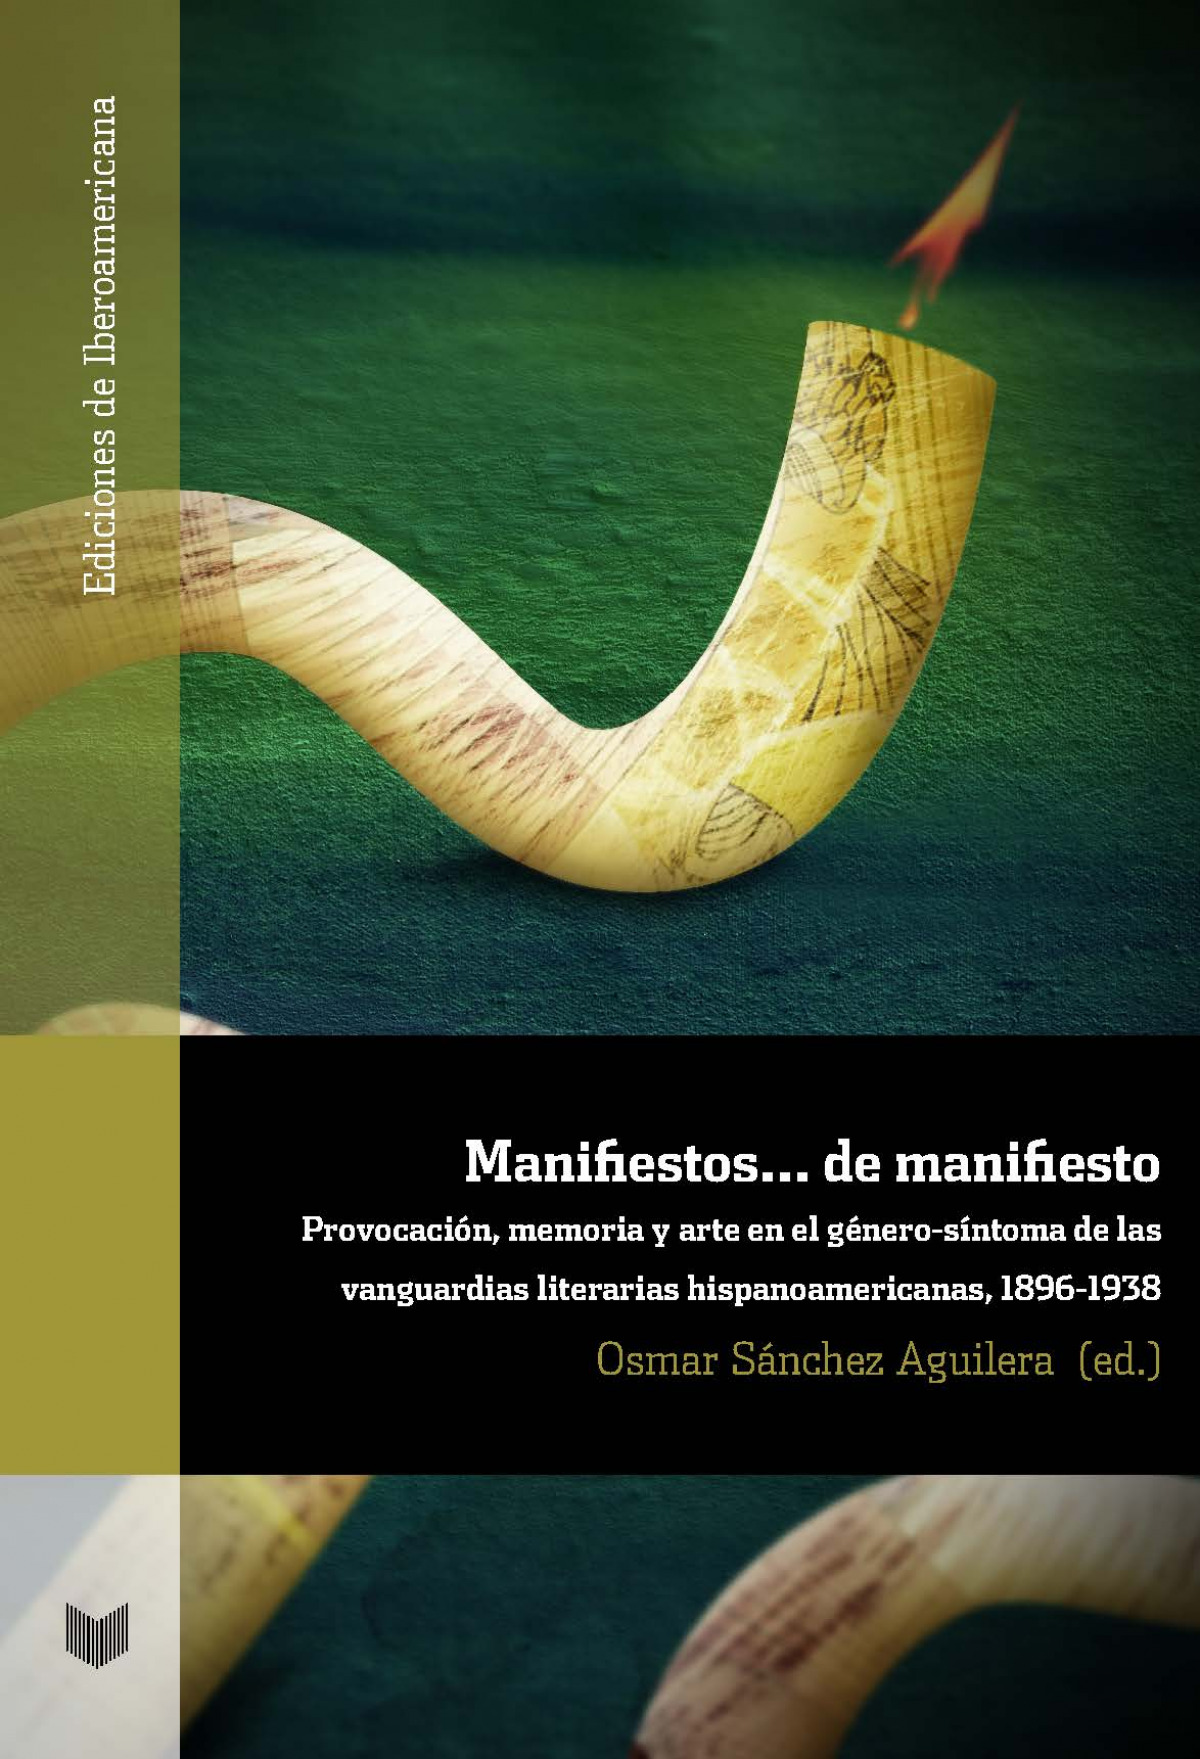 Manifiestos-- de manifiesto: provocación, memoria y arte en el género-síntoma de las vanguardias literarias hispanoamericanas, 1896-1938 (Ediciones de Iberoamericana, Band 90)